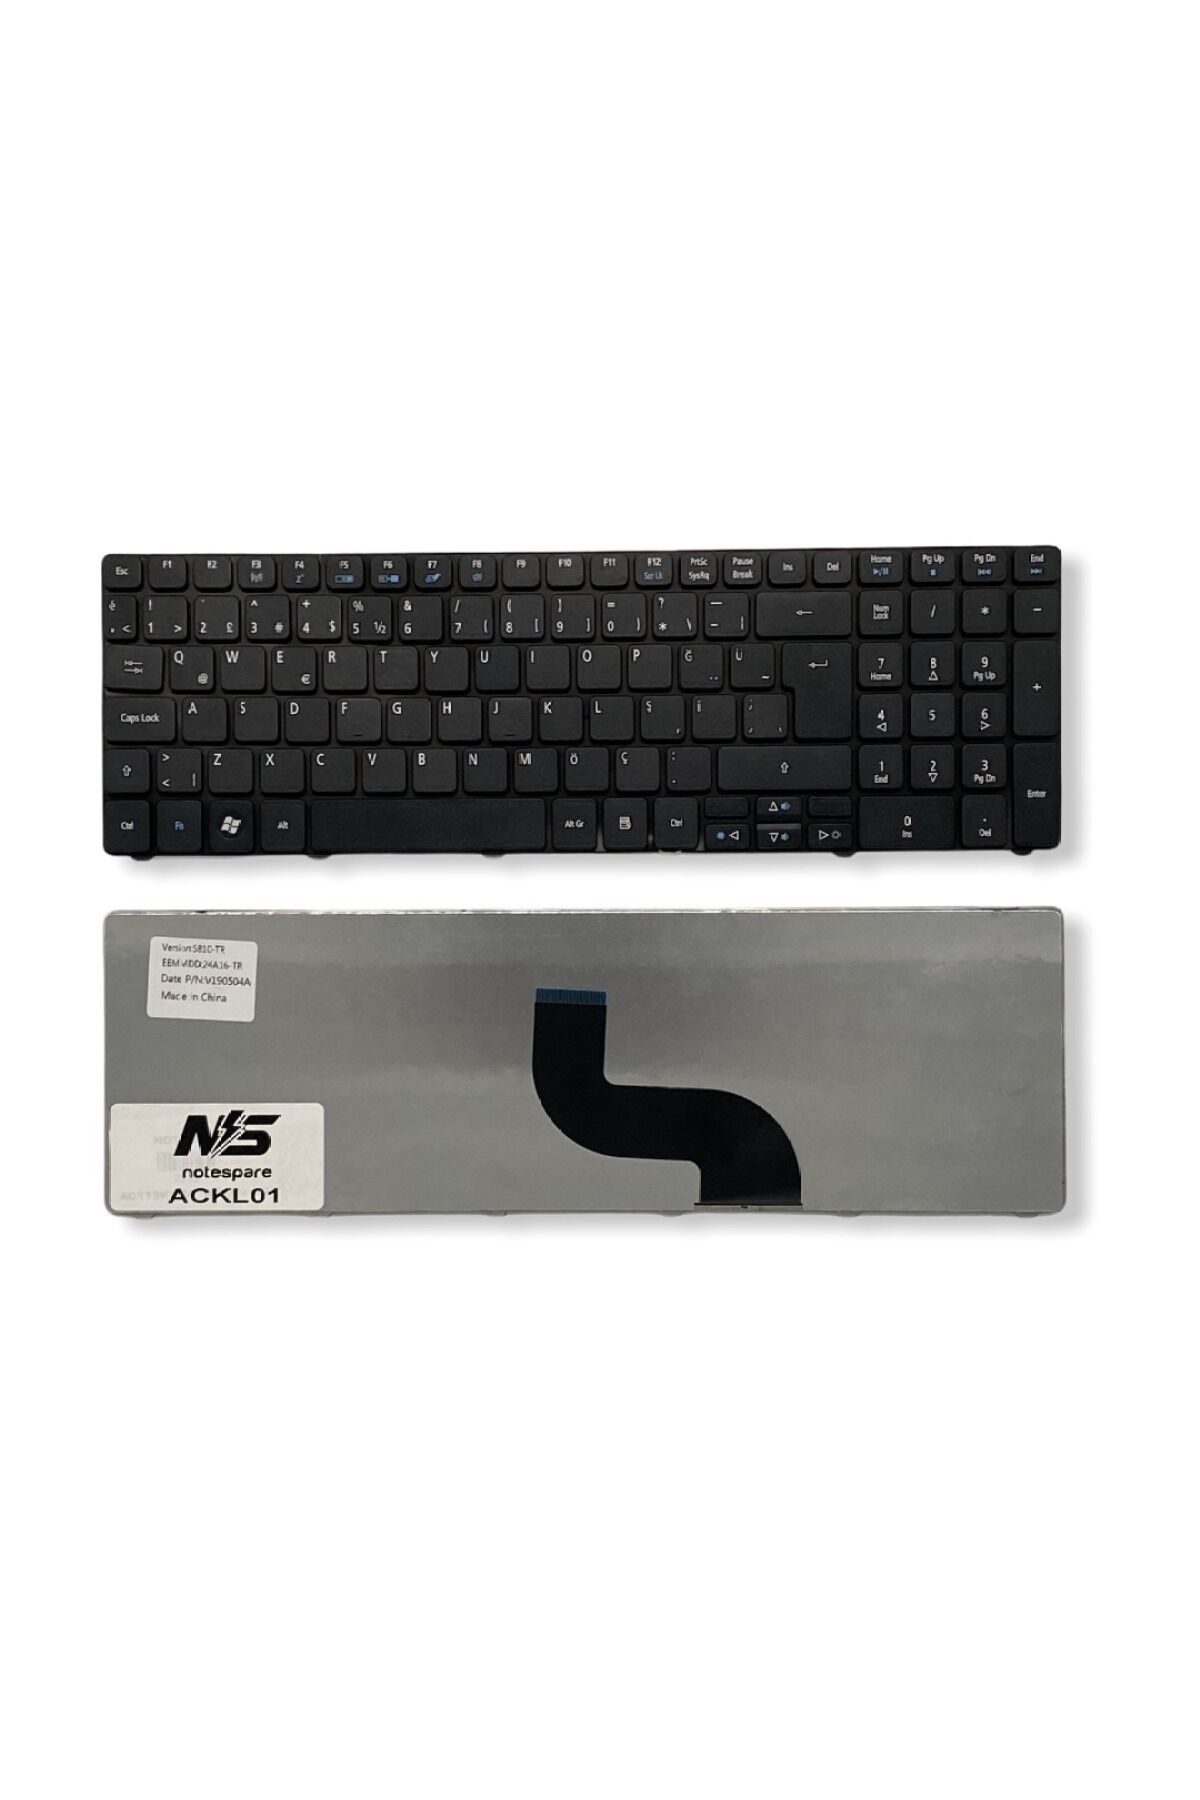 Acer ile Uyumlu 5552G-N954G32, 5552G-N954G50Mnkk, 5552-P343G32Mnrr Notebook Klavye Siyah TR